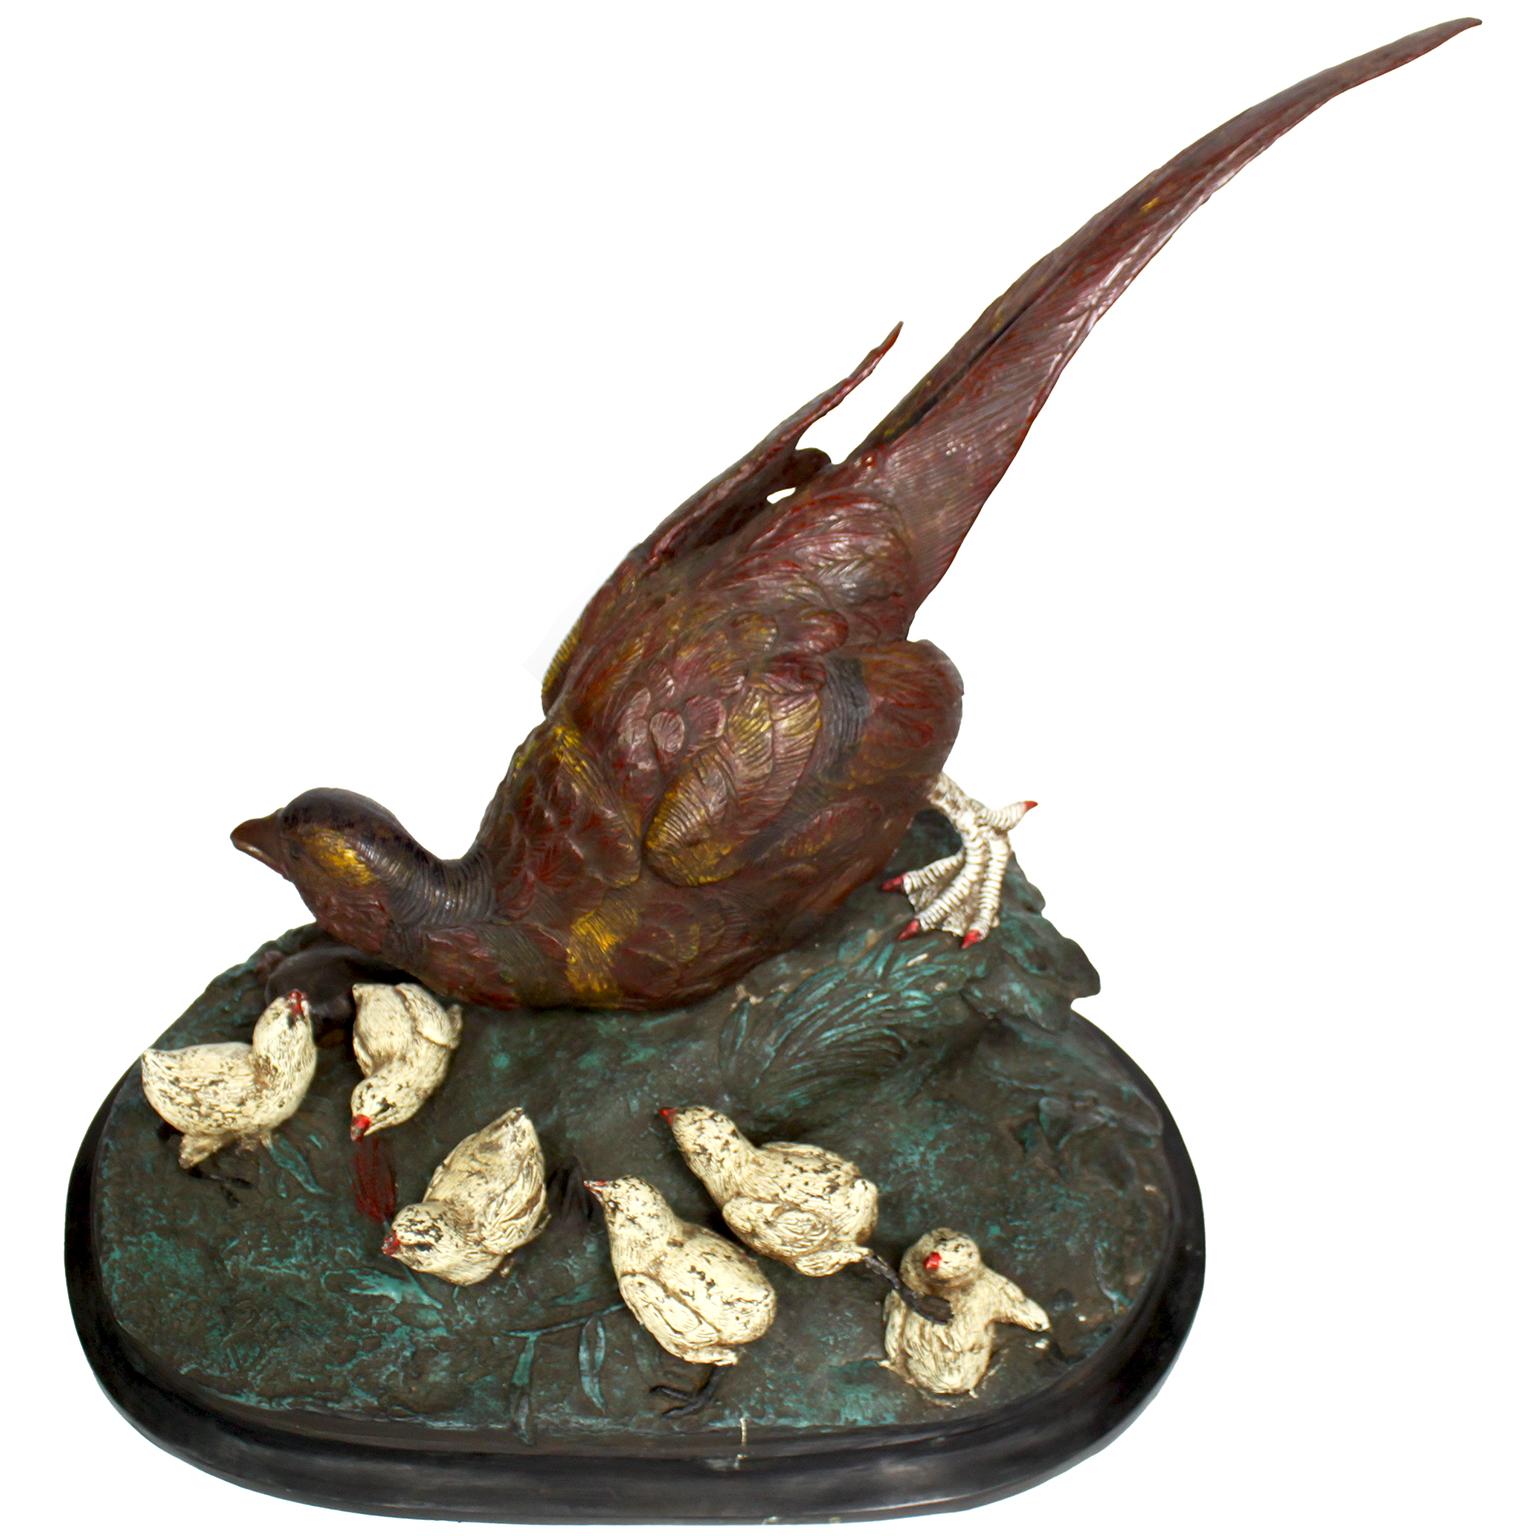 Grand bronze de style viennois peint à froid représentant un faisan avec ses poussins. La grande sculpture en bronze polychrome représente une figure de faisan dans un vert pâturage avec six poussins blancs à ses côtés. Signé avec un 